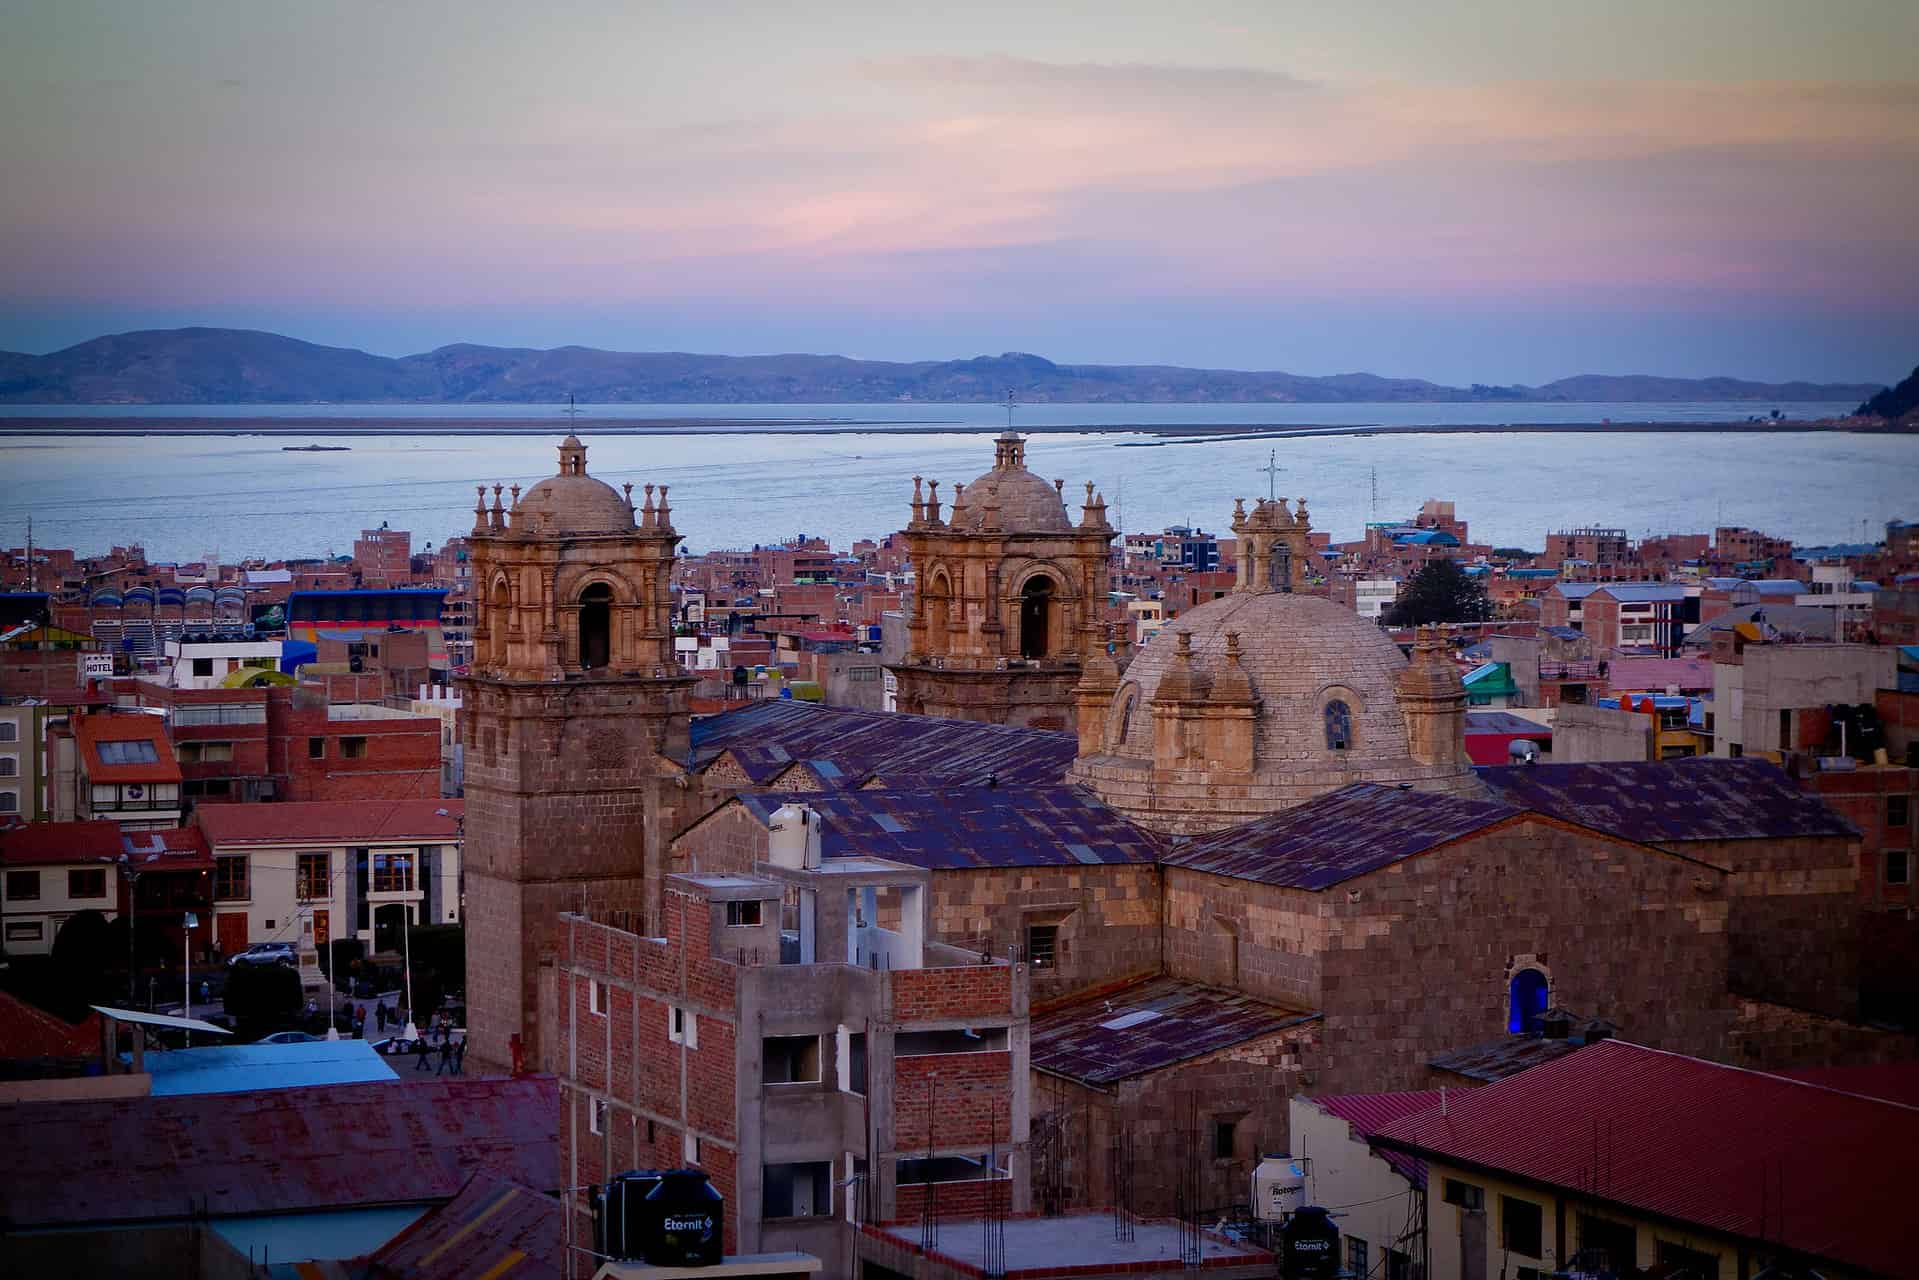 The city of Puno in Peru.